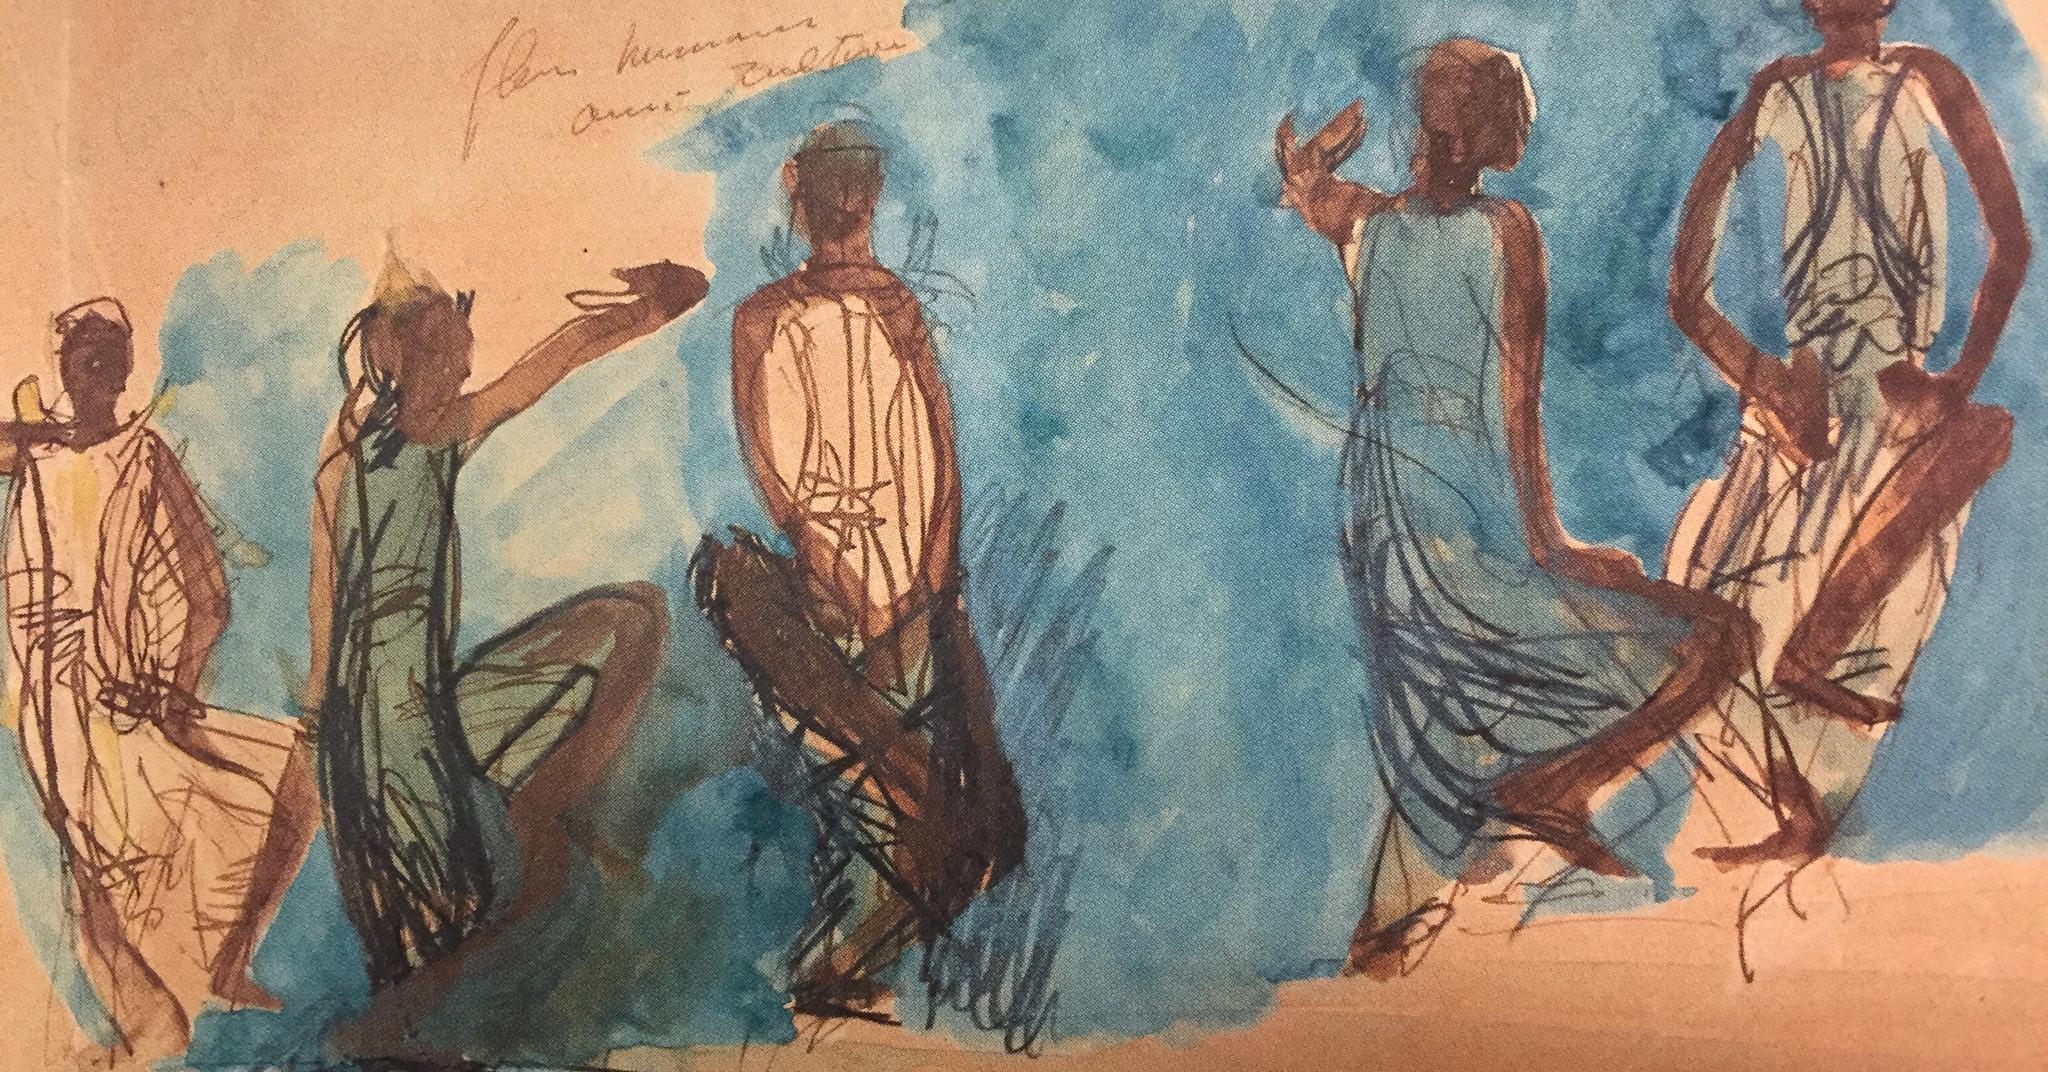 Fem studier av kambodsjanske dansere (1906) av franske Auguste Rodin kan nå sees i Statens Museum for Kunst i København.